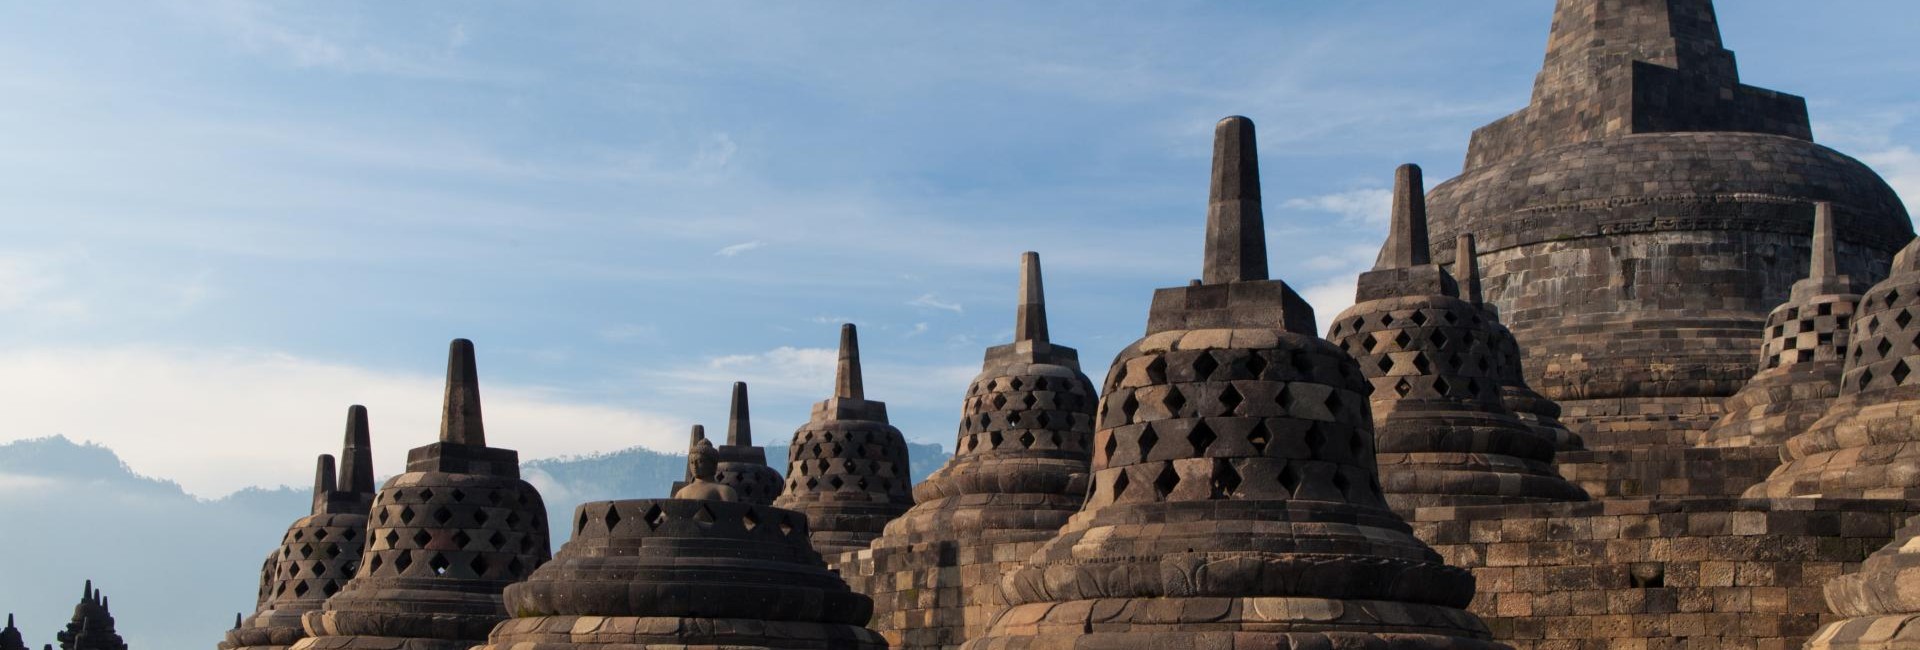 Explorer le temple de Borobudur en Indonésie